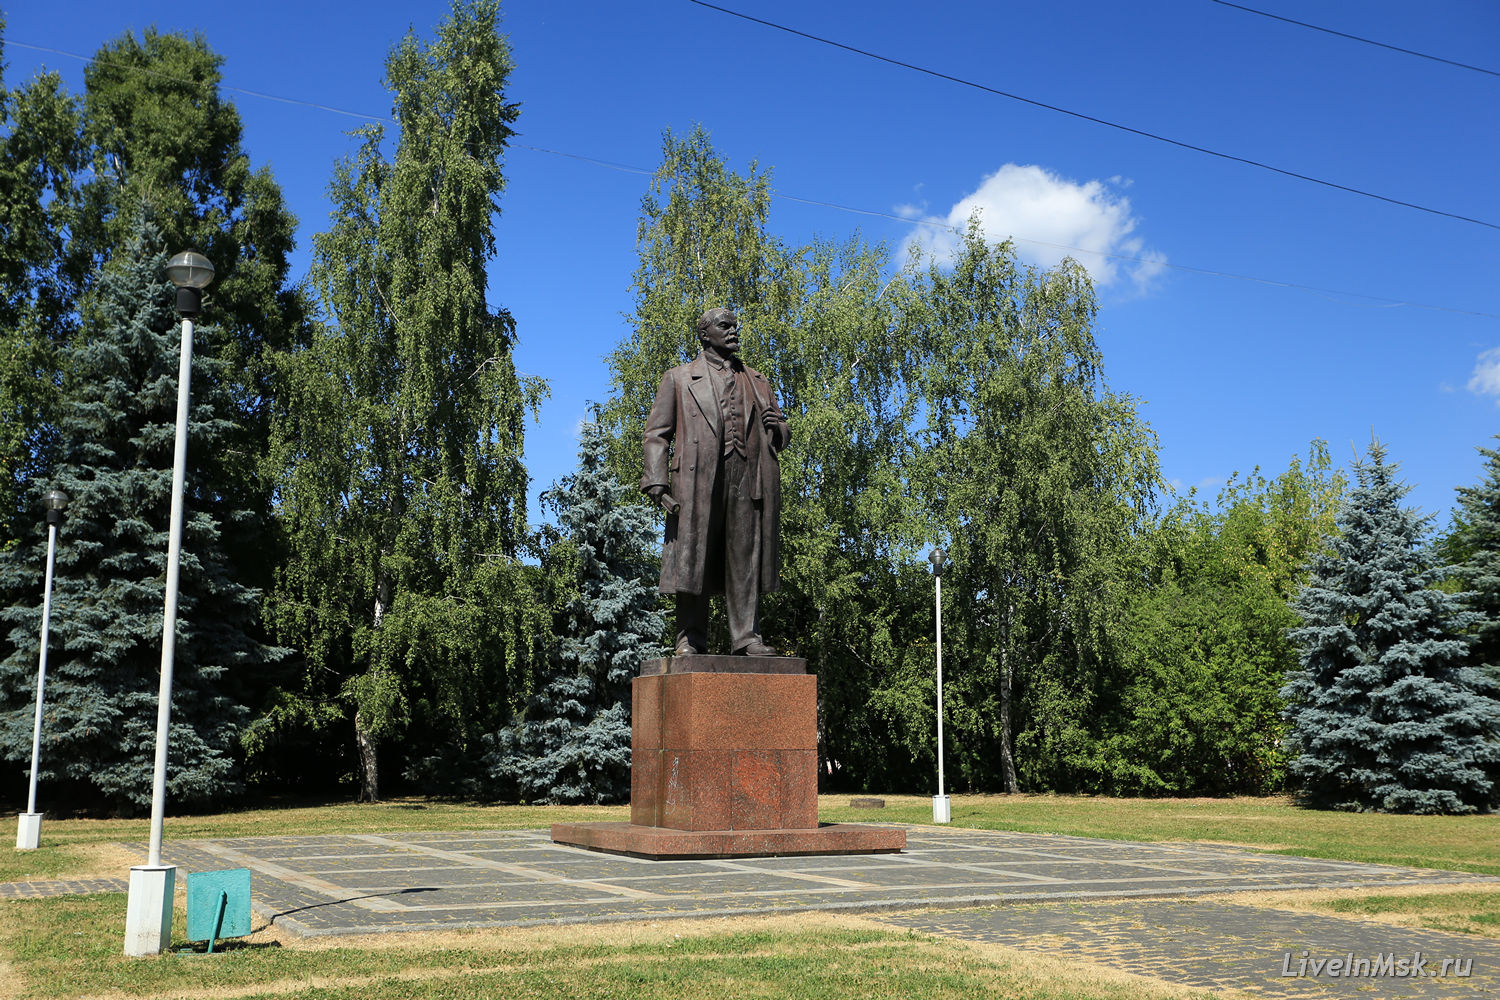 Петровское-Разумовское, памятник Ленину на Лиственничной аллее, фото 2015 года